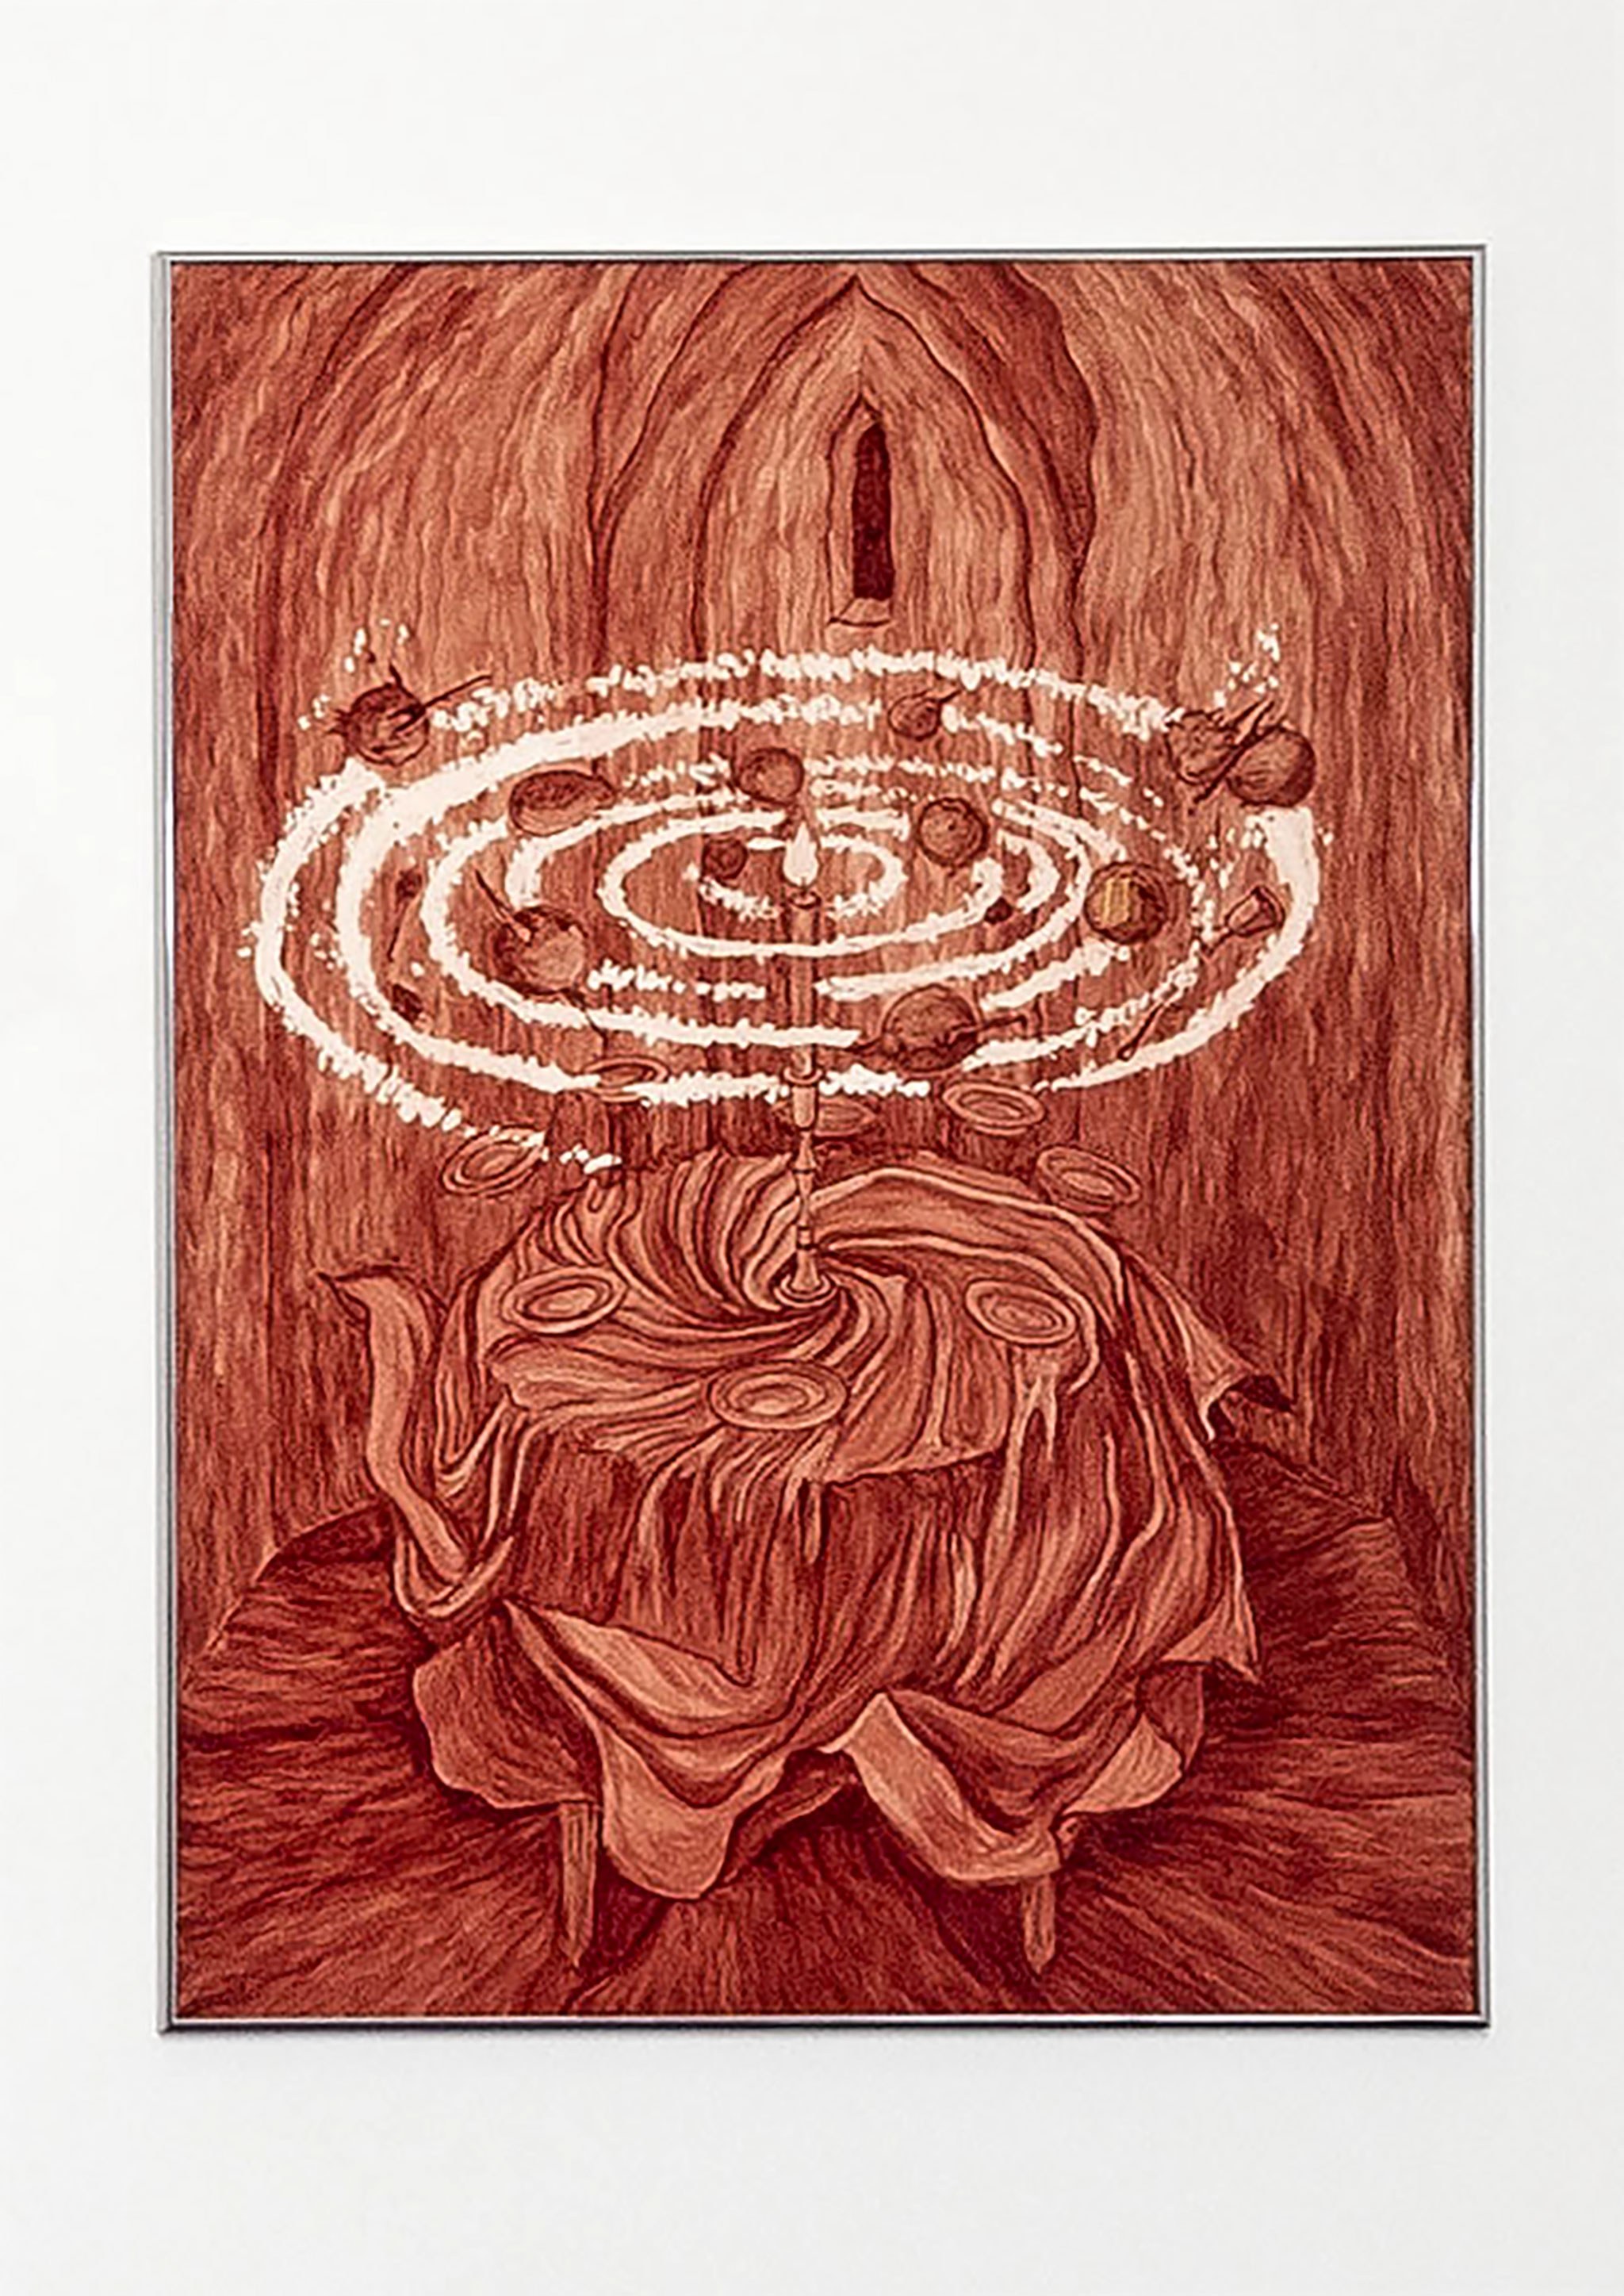 Alison Flora, “Dîner ressuscité”, 2022, Human blood on paper, 76 × 56 cm. Bright aluminium frame. Photo credit Romain Darnaud